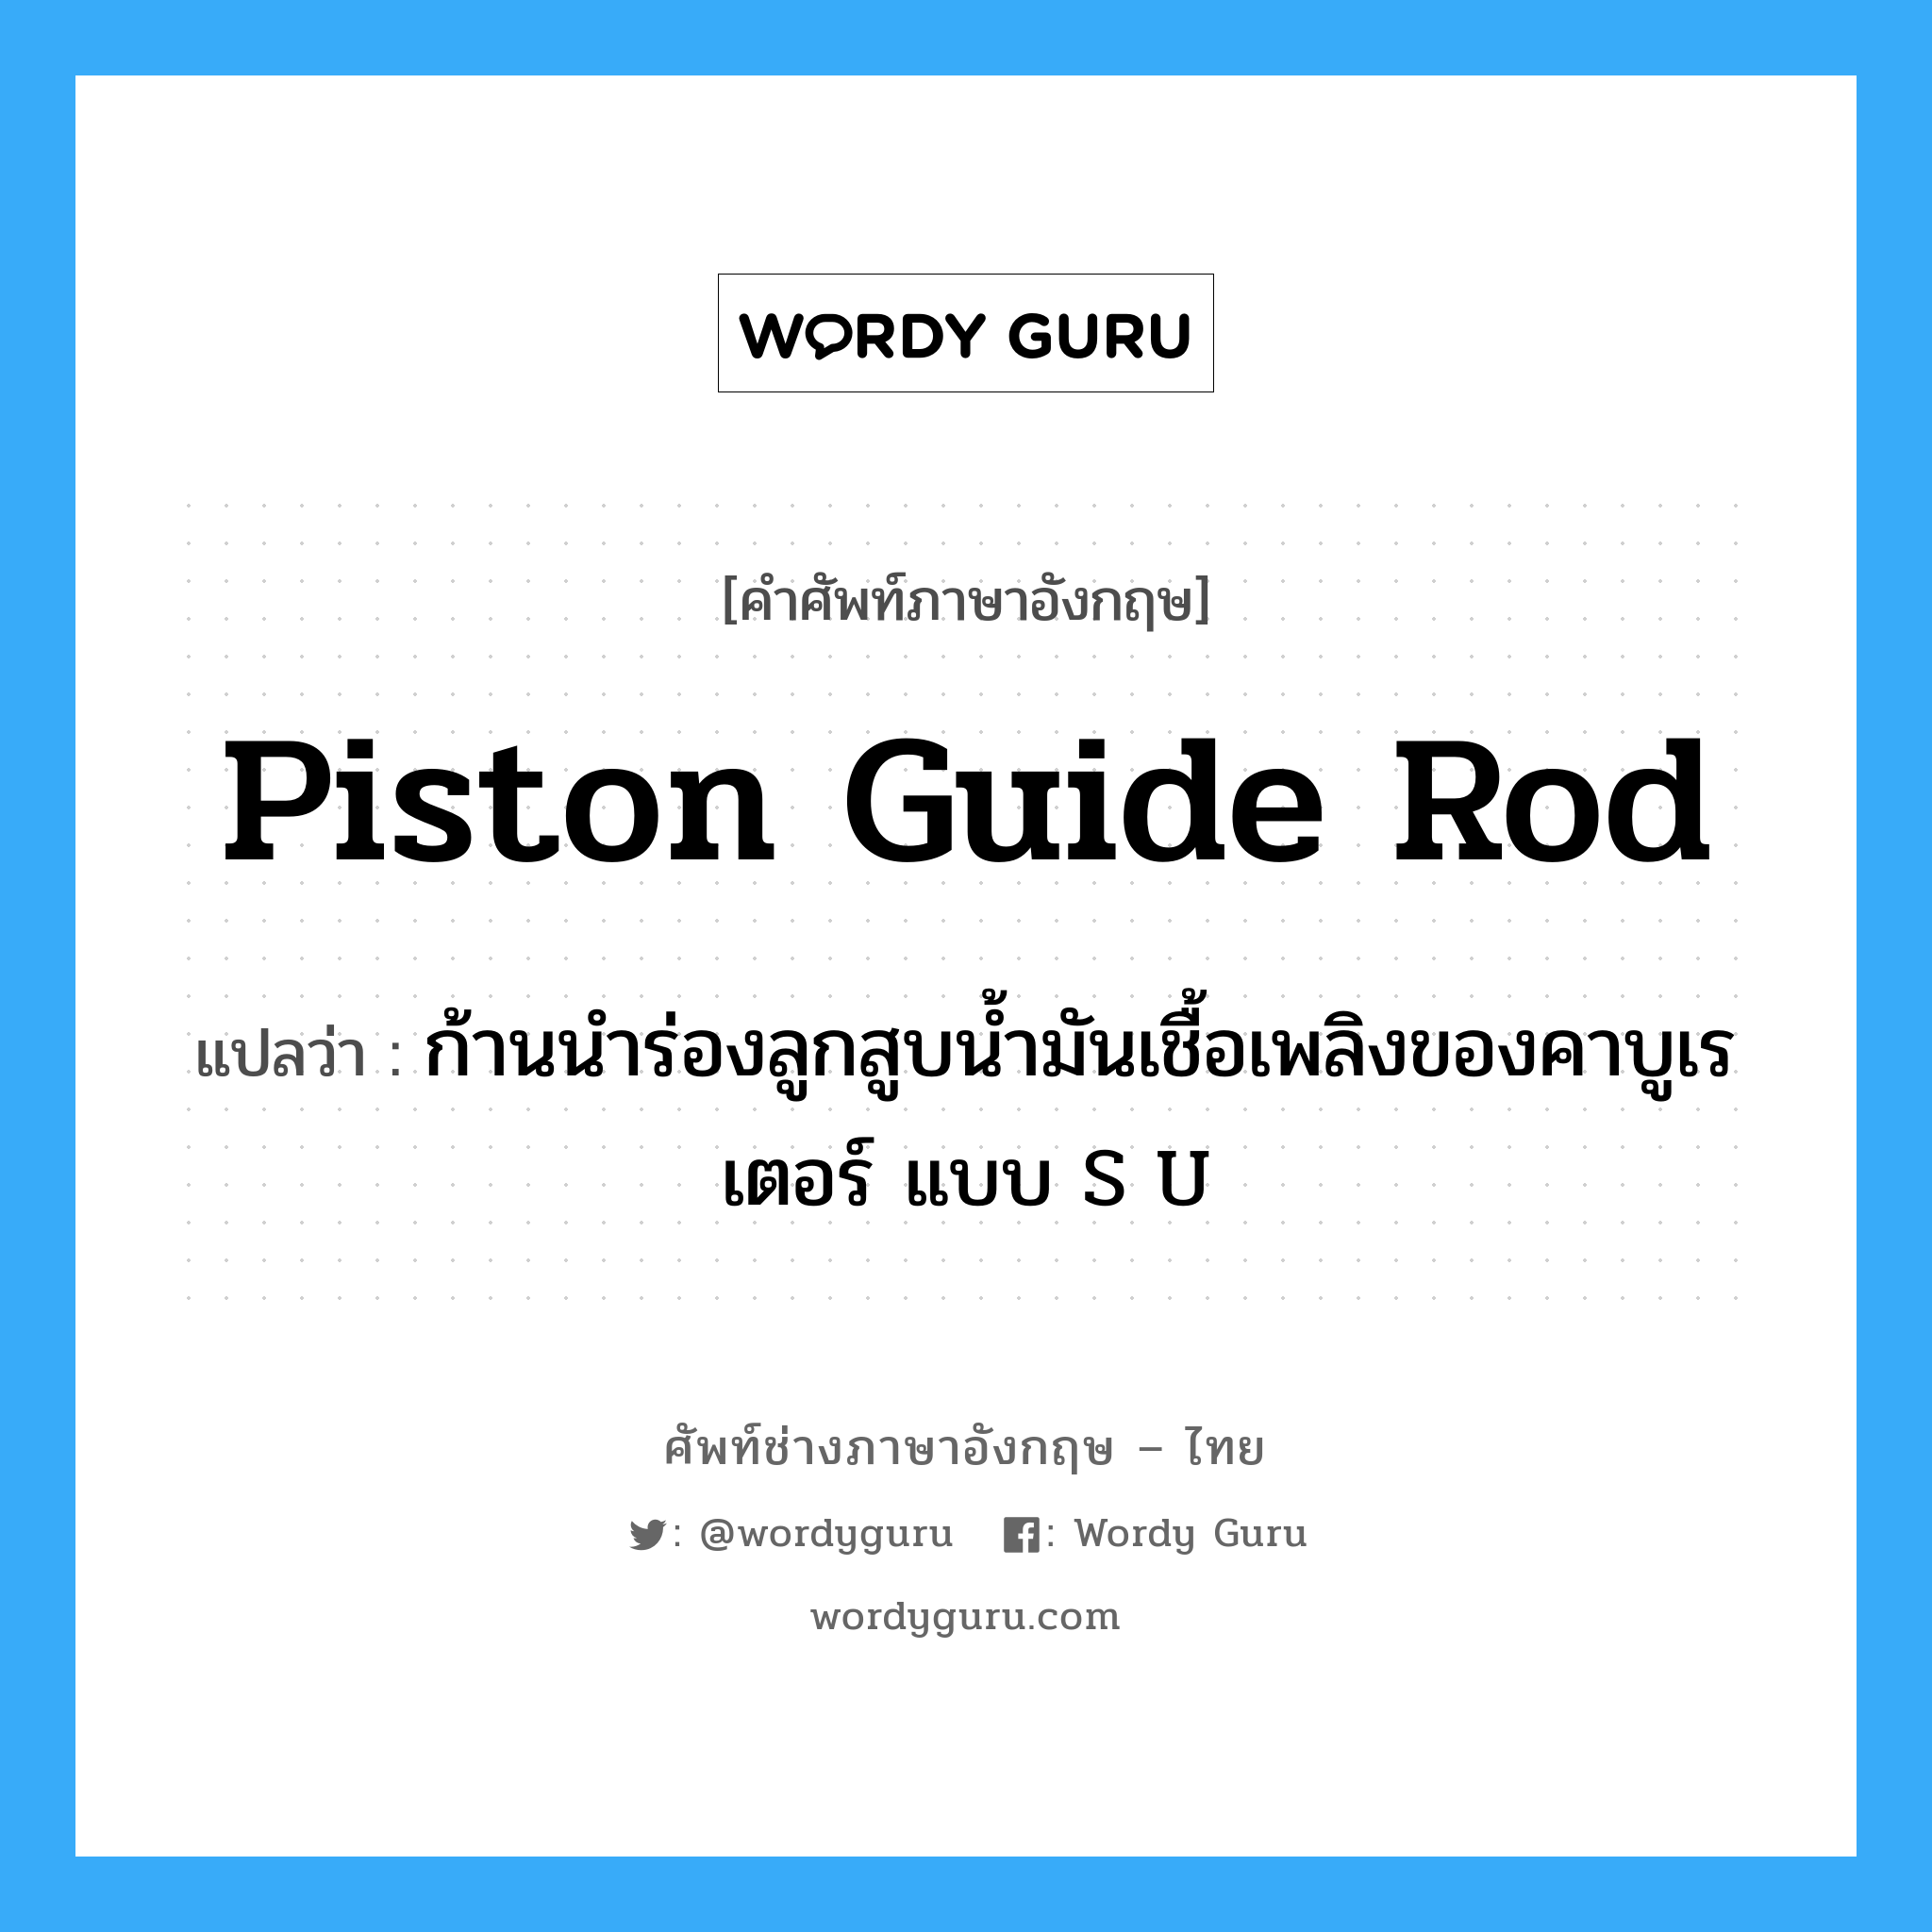 piston guide rod แปลว่า?, คำศัพท์ช่างภาษาอังกฤษ - ไทย piston guide rod คำศัพท์ภาษาอังกฤษ piston guide rod แปลว่า ก้านนำร่องลูกสูบน้ำมันเชื้อเพลิงของคาบูเรเตอร์ แบบ S U